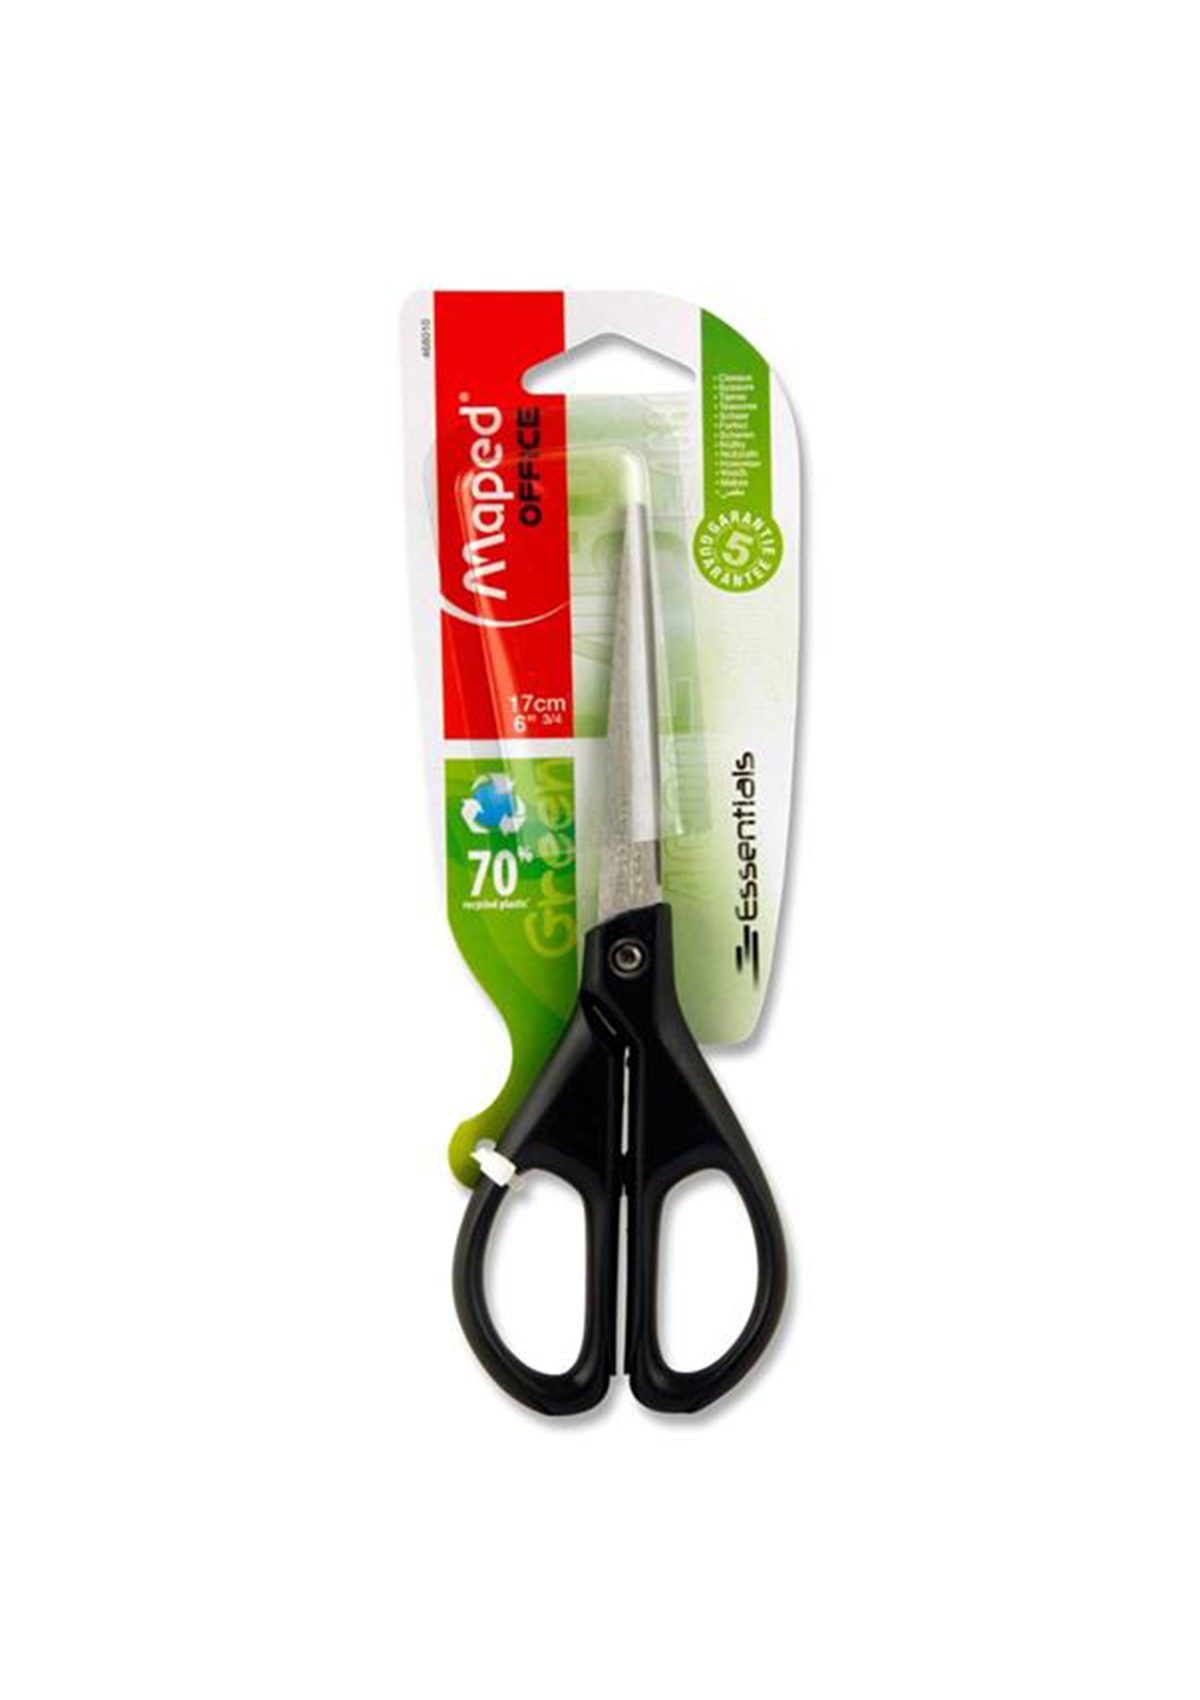 Essentials Green 17Cm Scissors